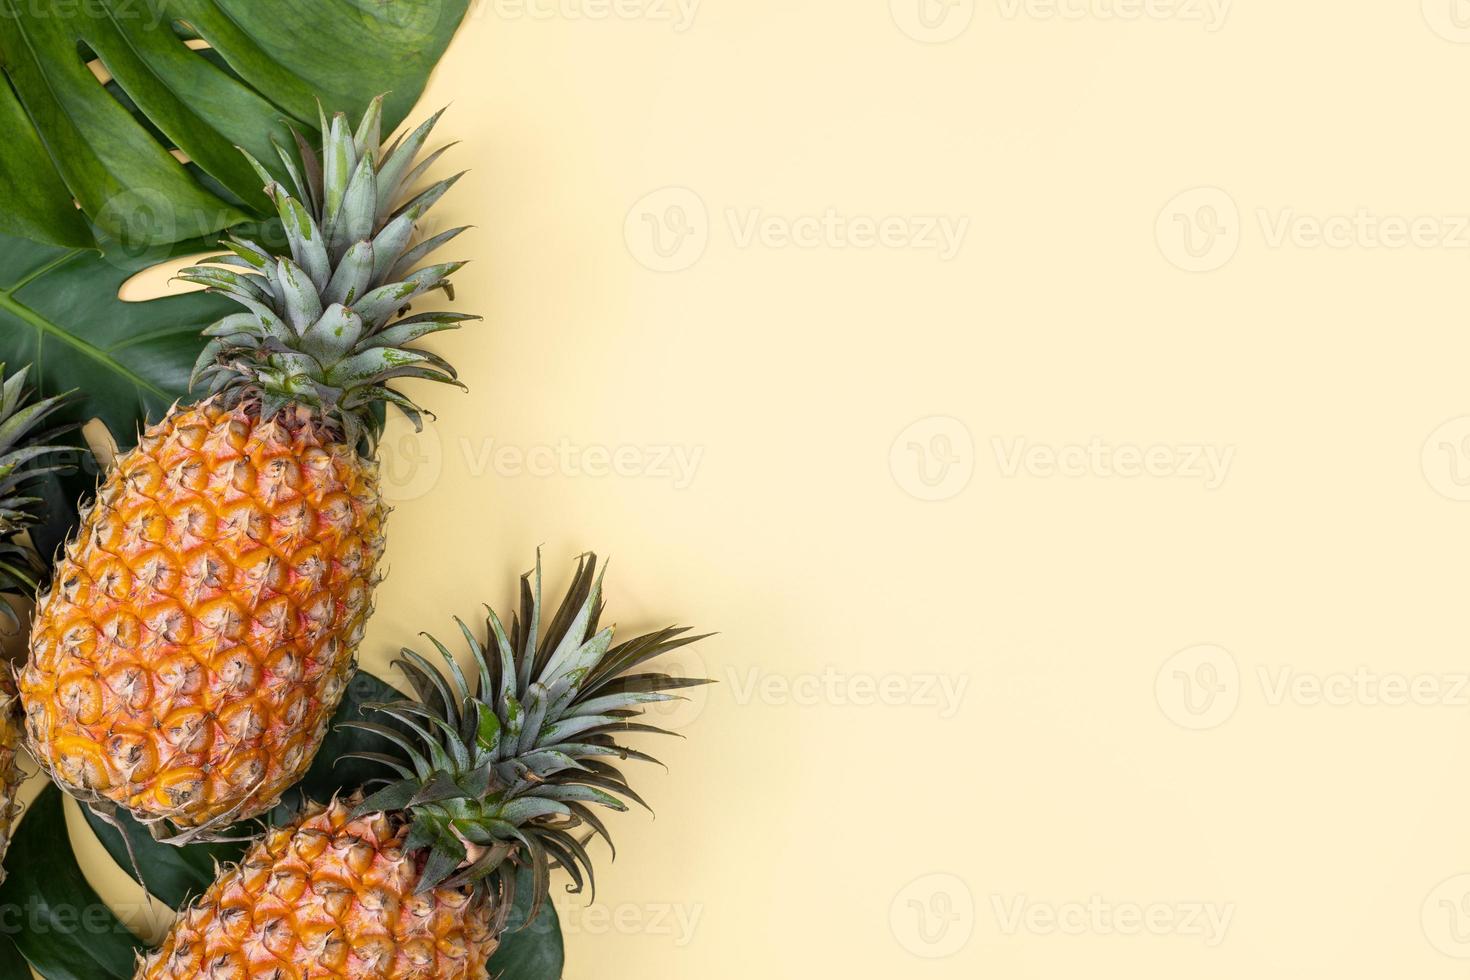 bellissimo ananas su foglie di monstera di palma tropicale isolate su sfondo giallo pastello brillante, vista dall'alto, distesa, sopra la frutta estiva. foto